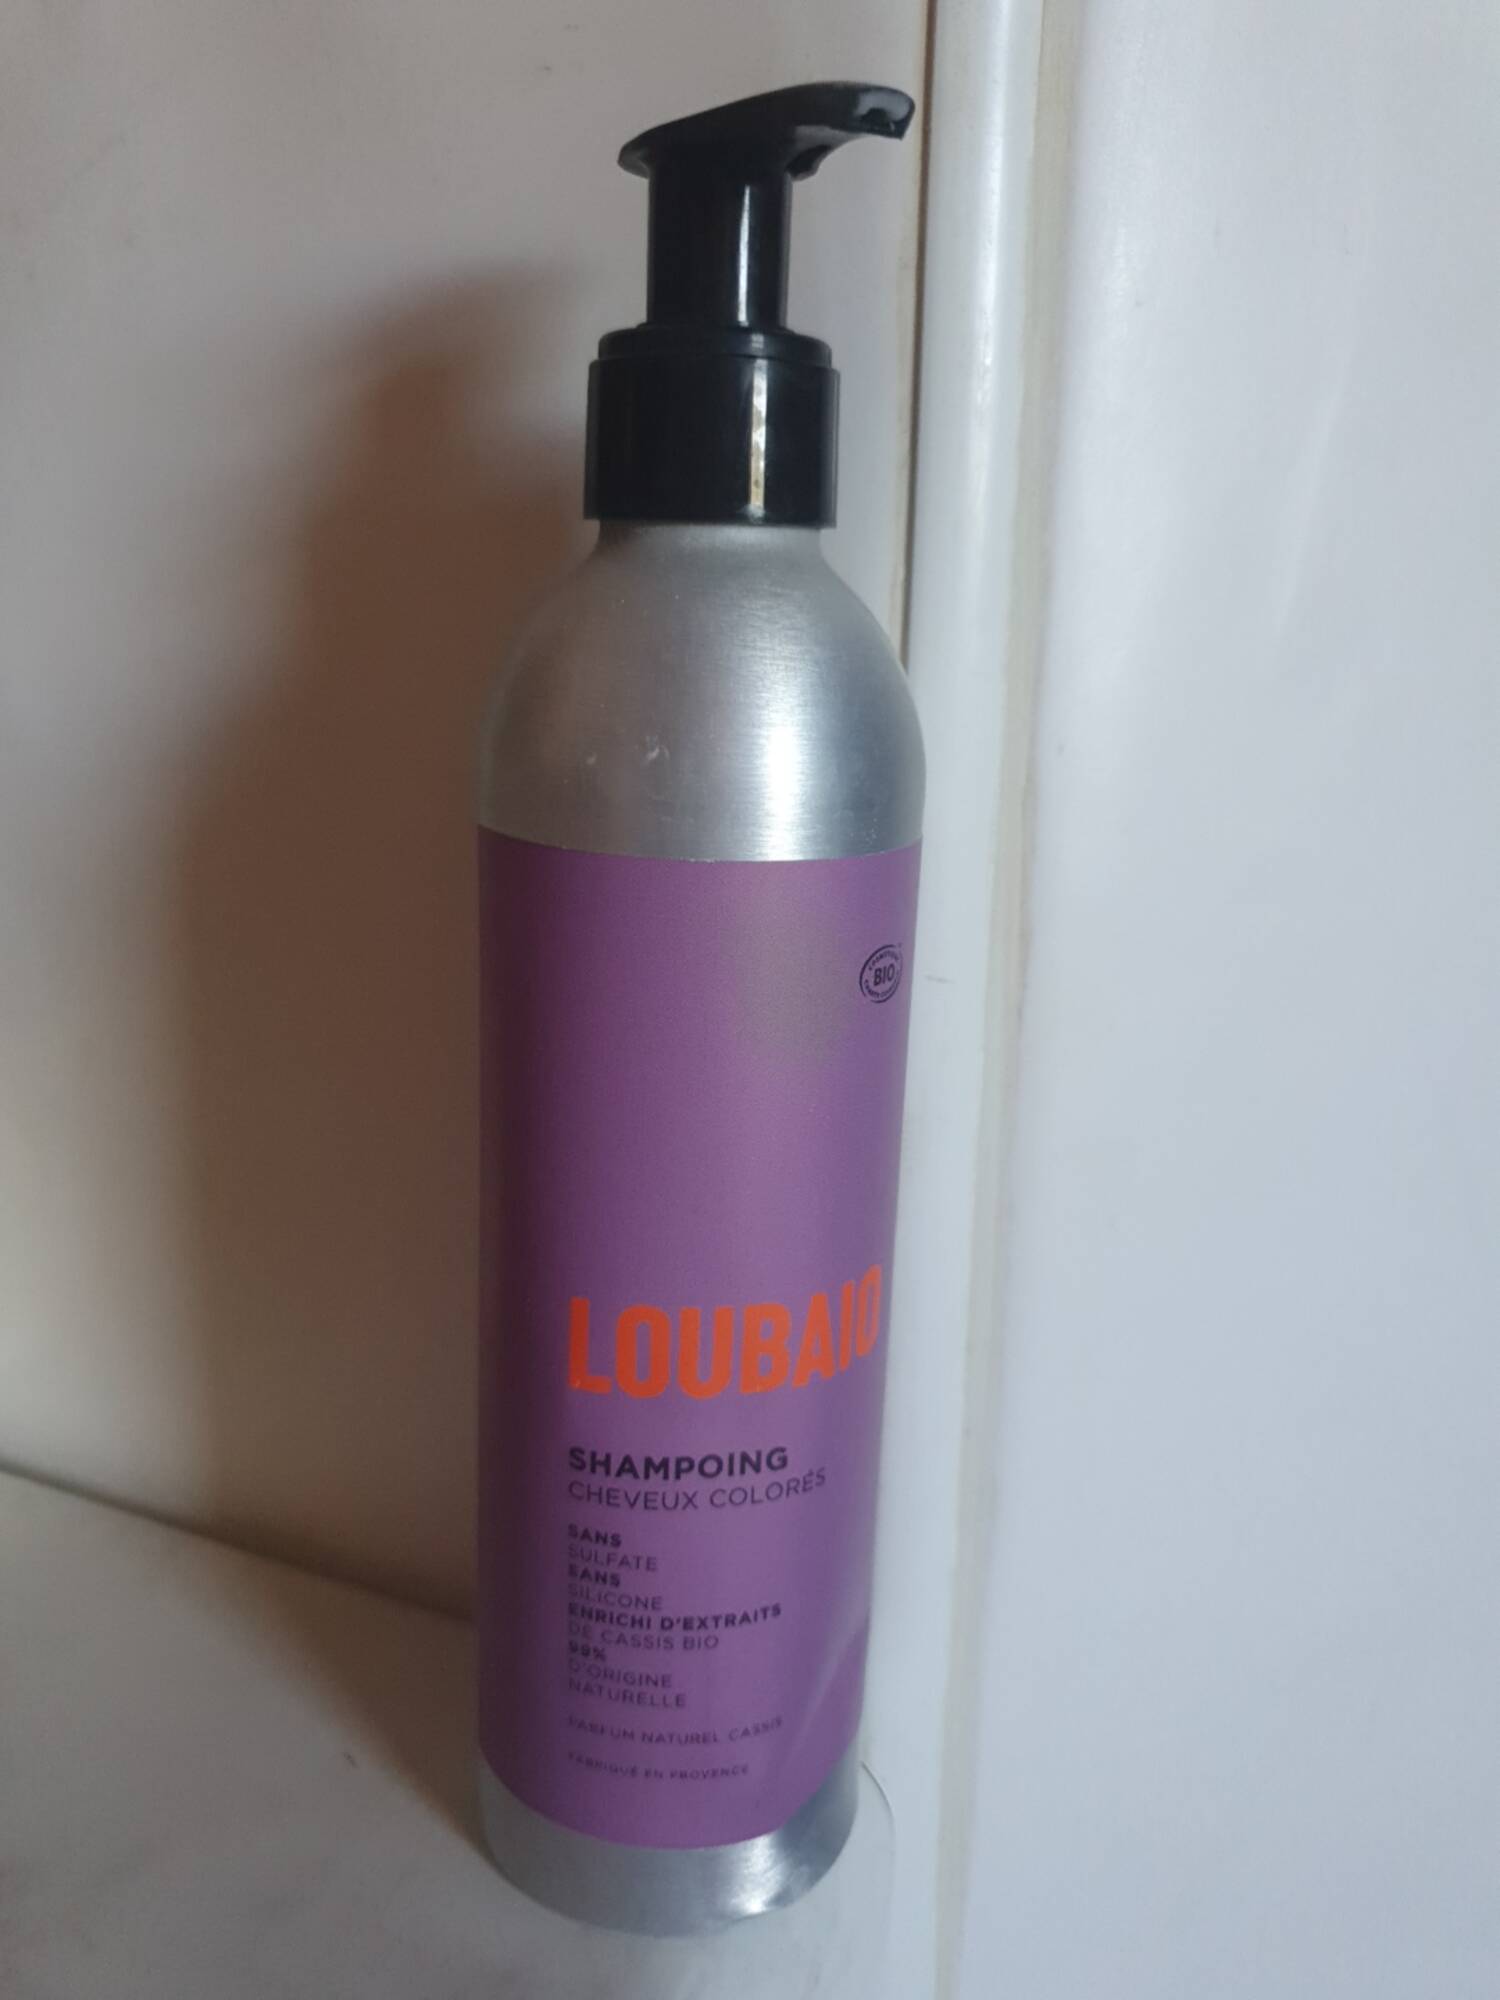 LOUBAIO - Shampooing cheveux colorés 